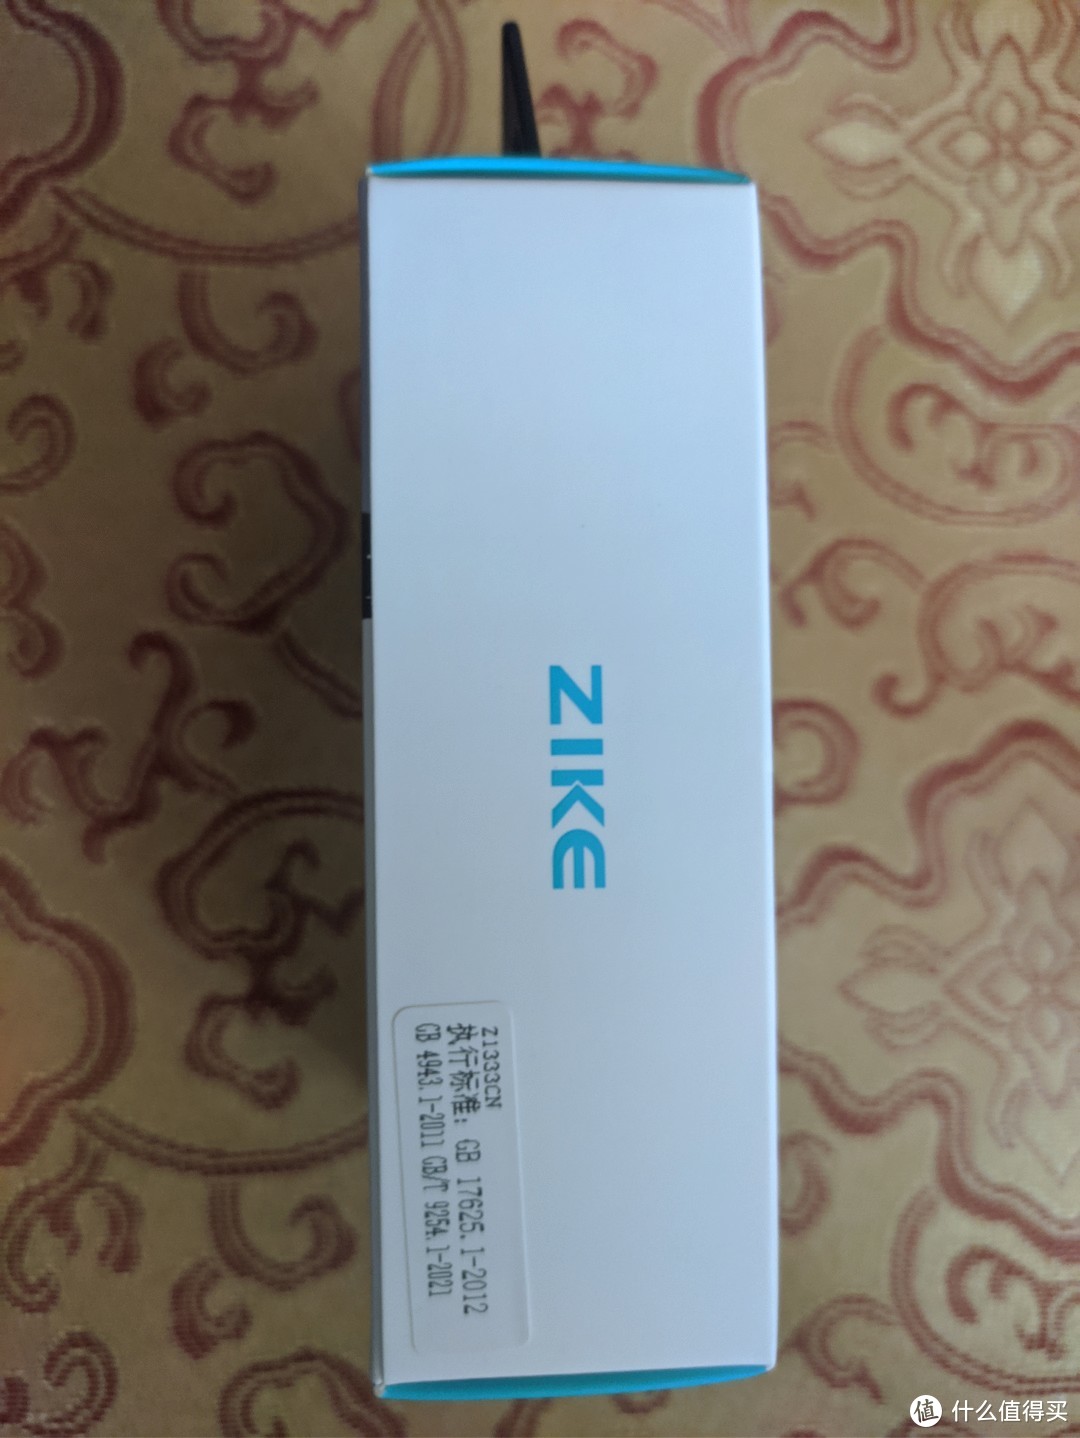 ZIKE 35W氮化镓充电器体验